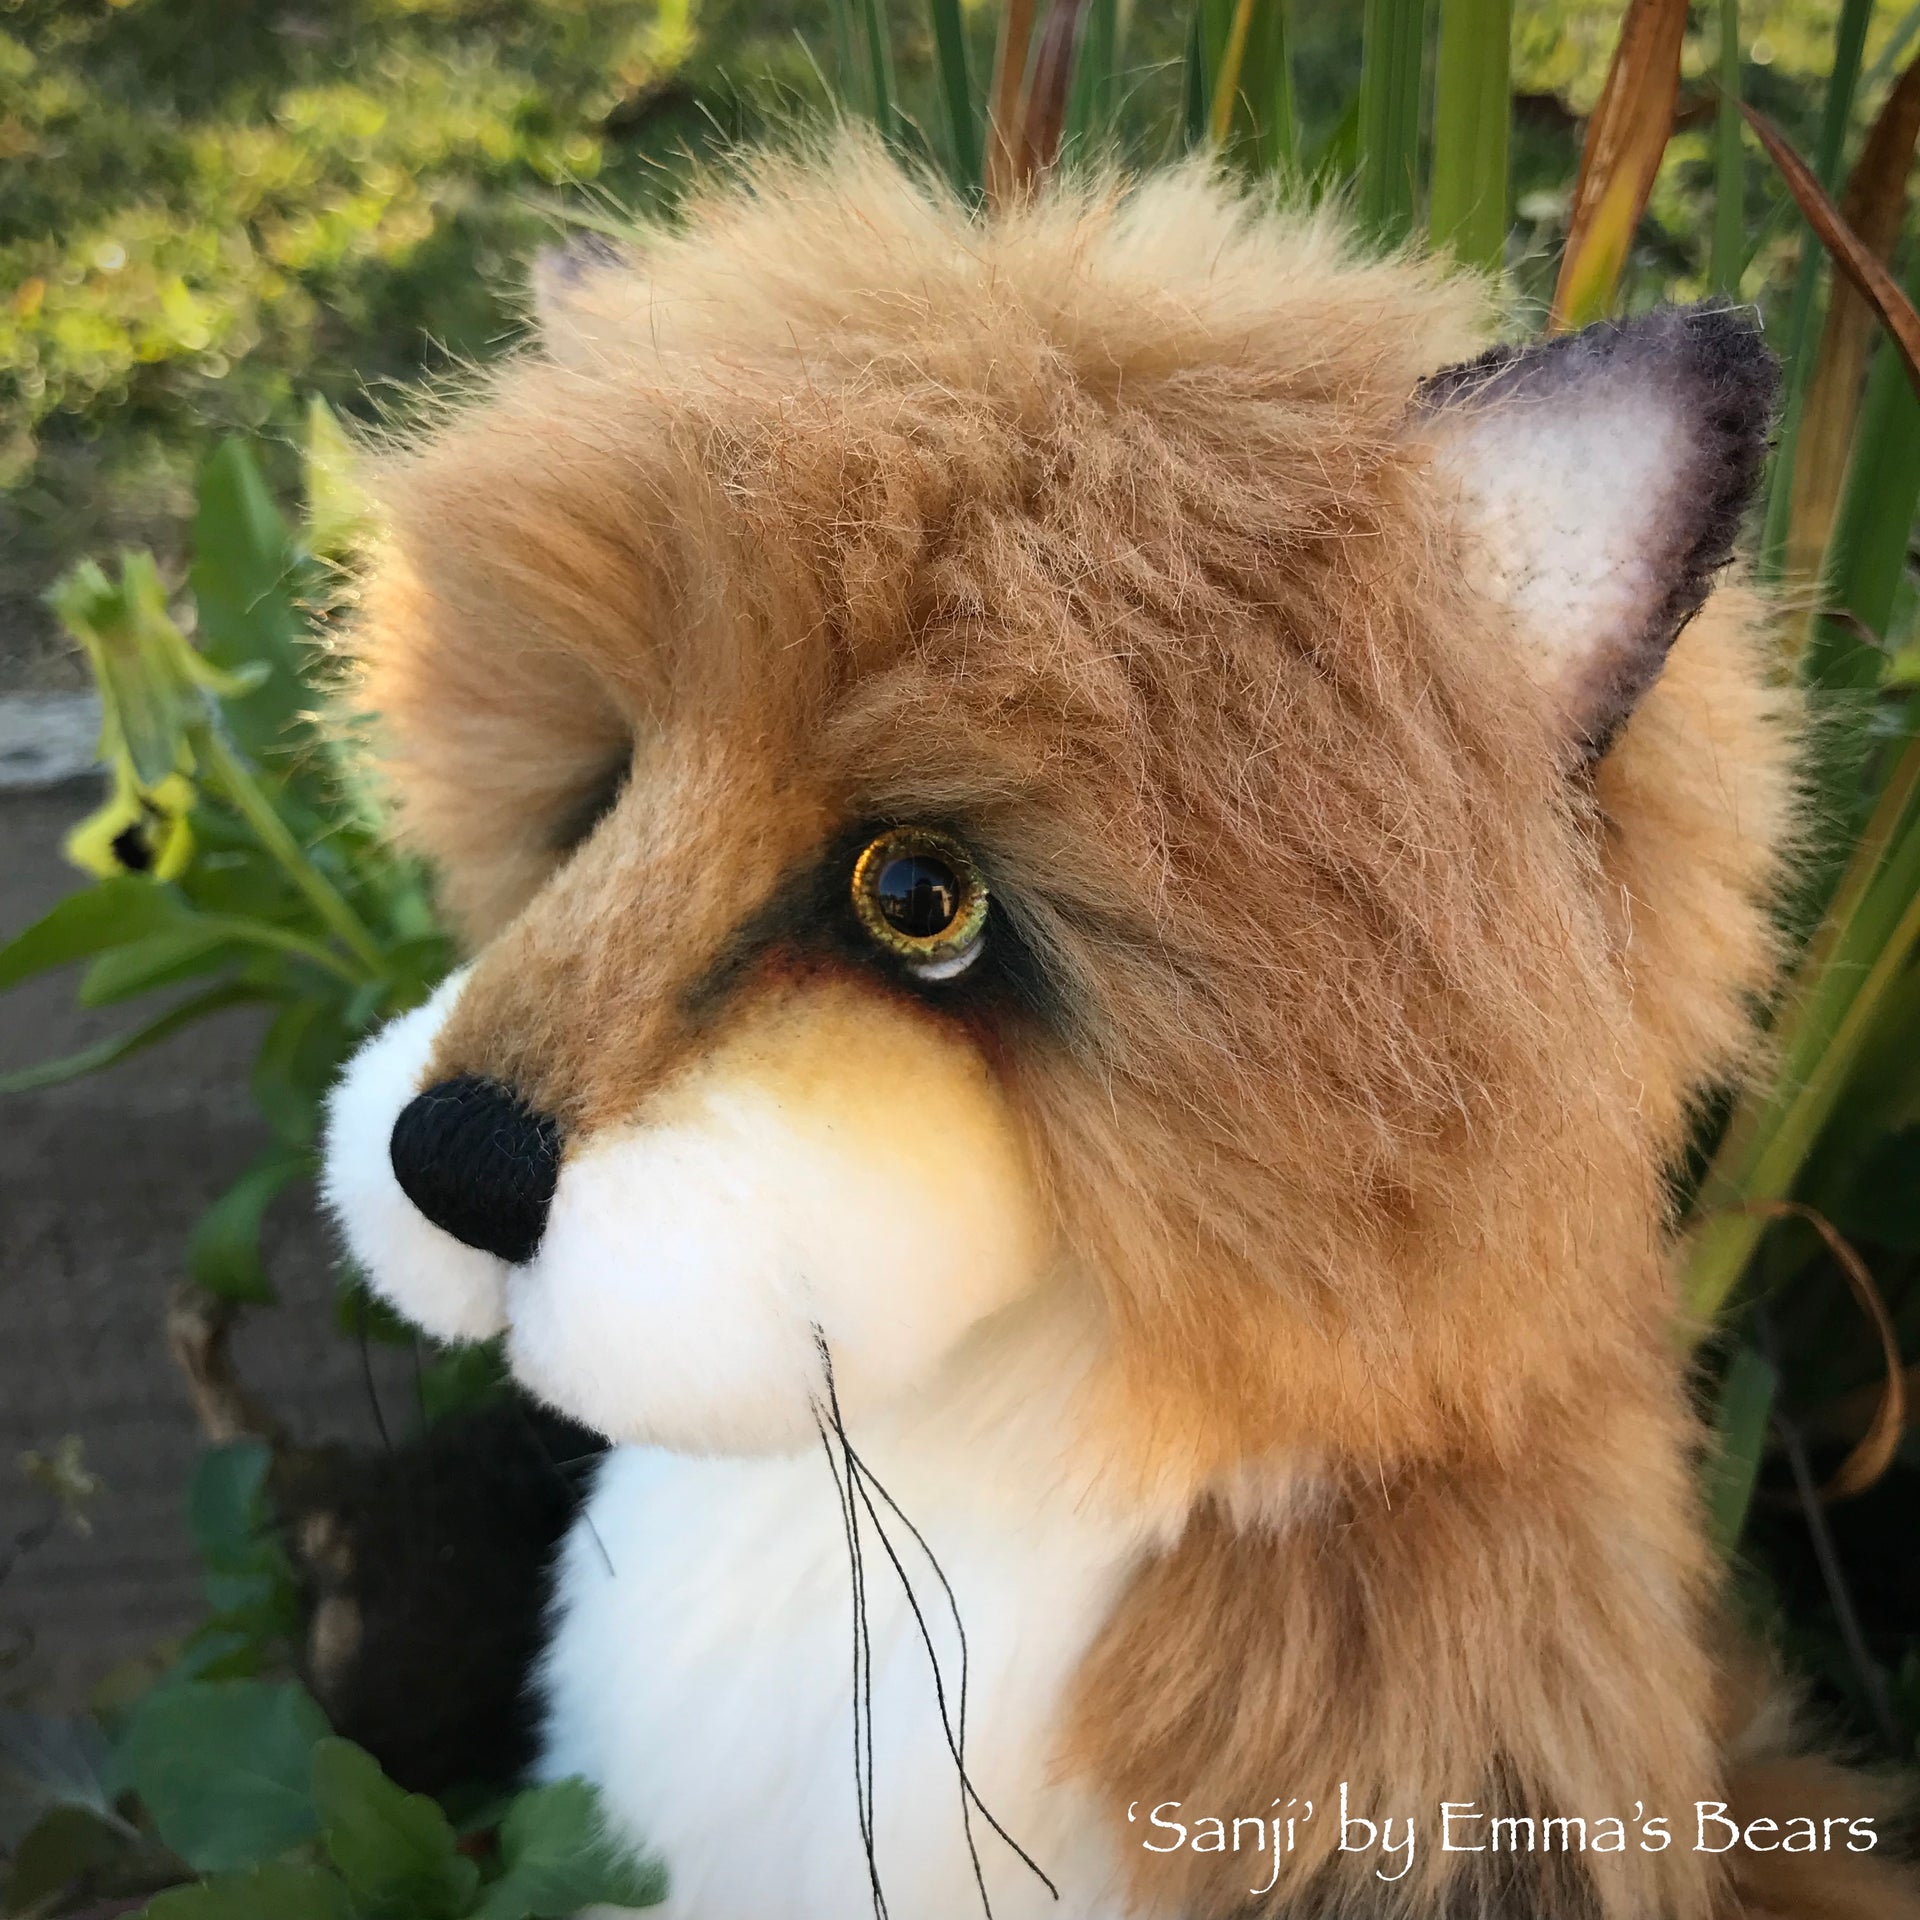 Sanji - 9" Artist Soft Sculpture Fox by Emma's Bears - OOAK